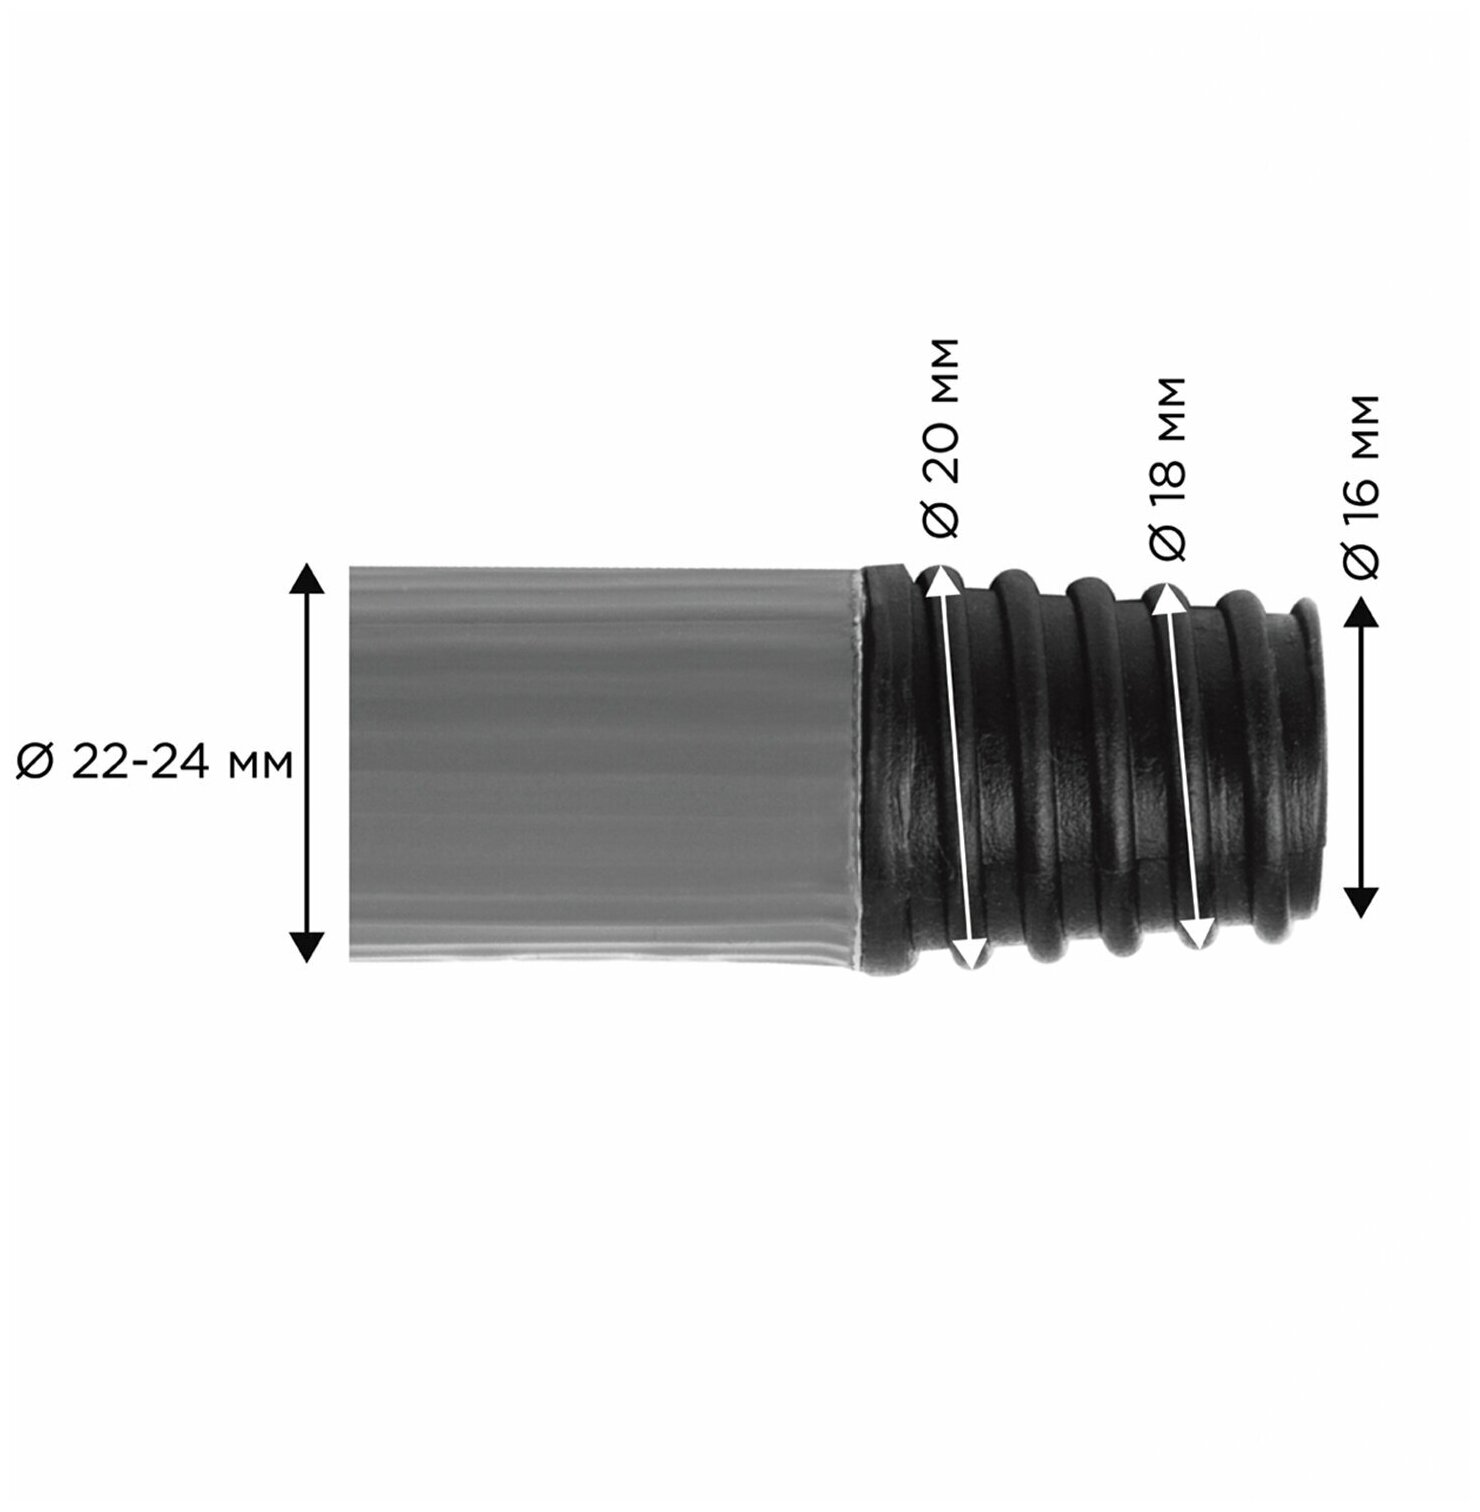 Черенок Лайма для уборочного инвентаря 130 см, металлопластик 0,35 мм, усиленный, Expert (605239)